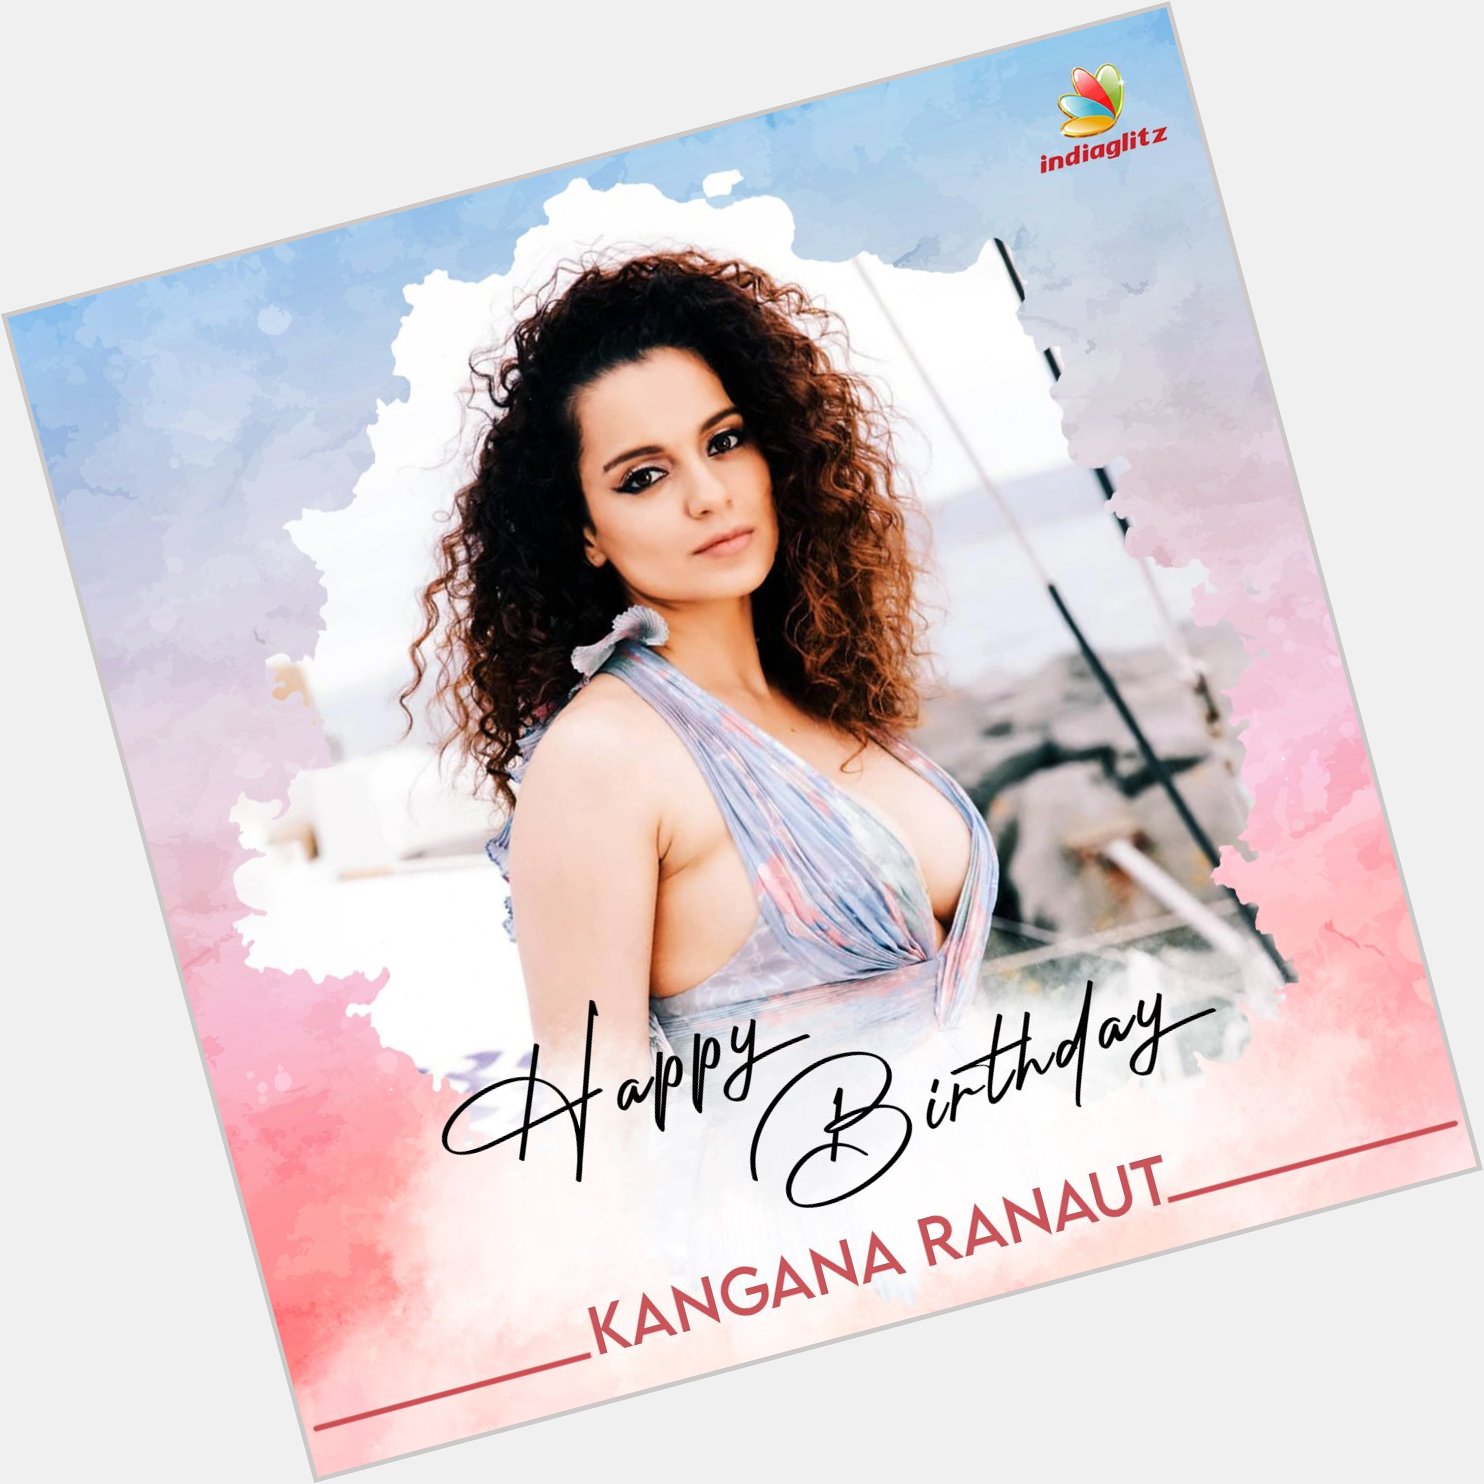 Wishing Actress Kangana Ranaut a Very Happy Birthday   